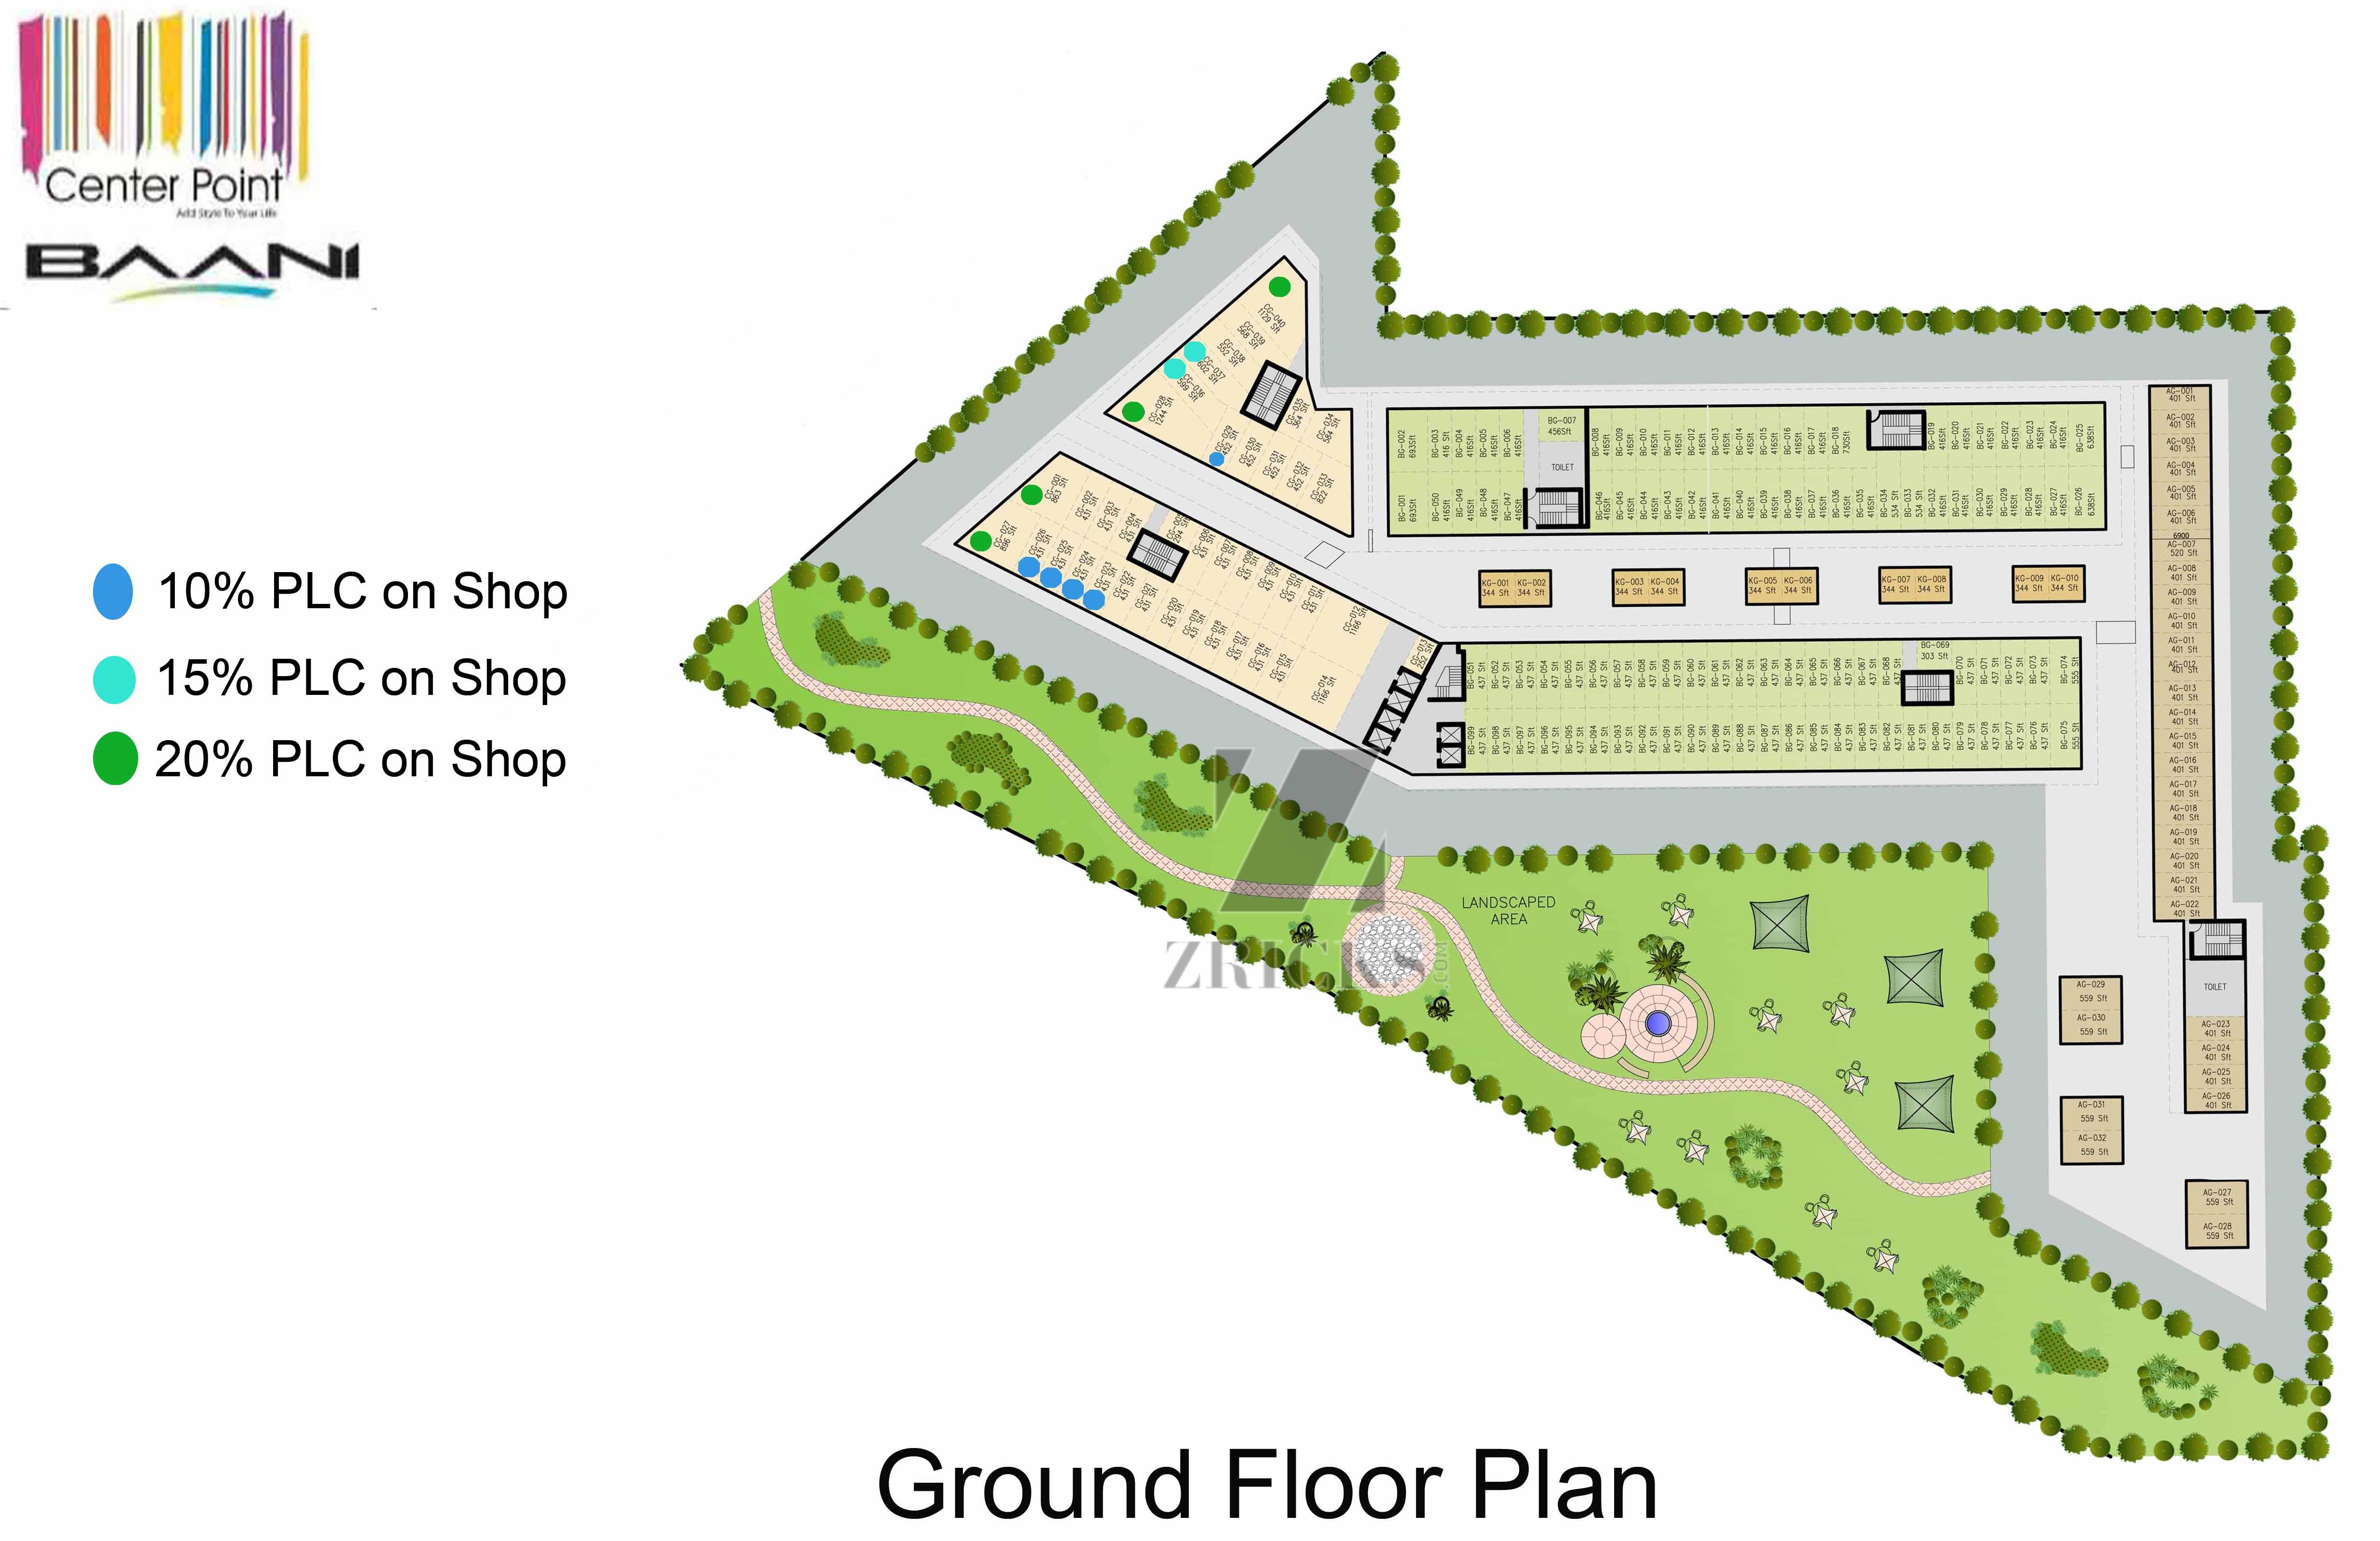 Baani Center Point Floor Plan